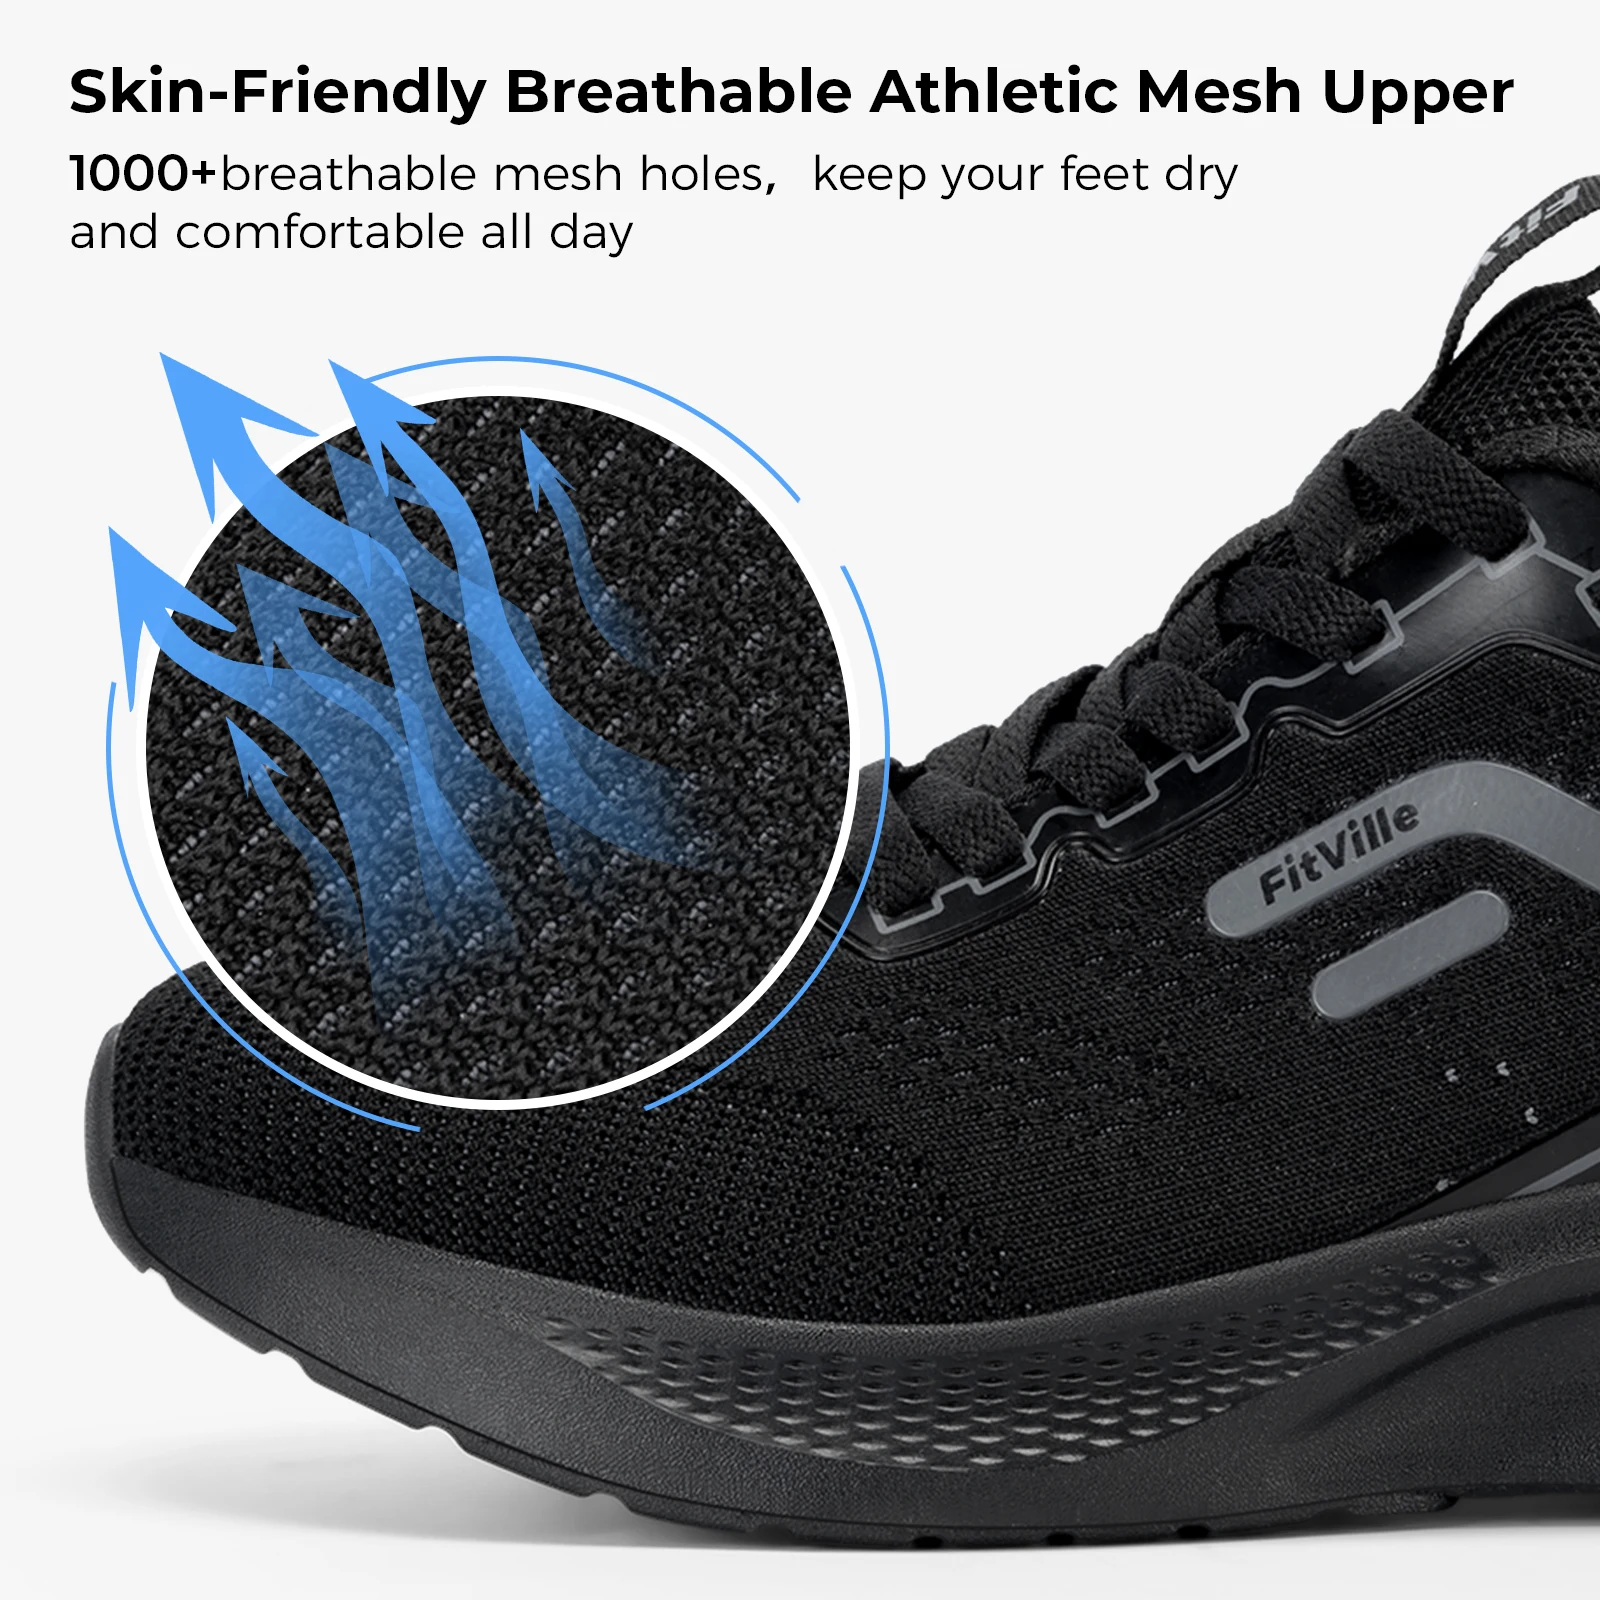 Fittrail-calçados esportivos para homens, tênis de corrida respiráveis e leves, largos, treinamento atlético, para os pés